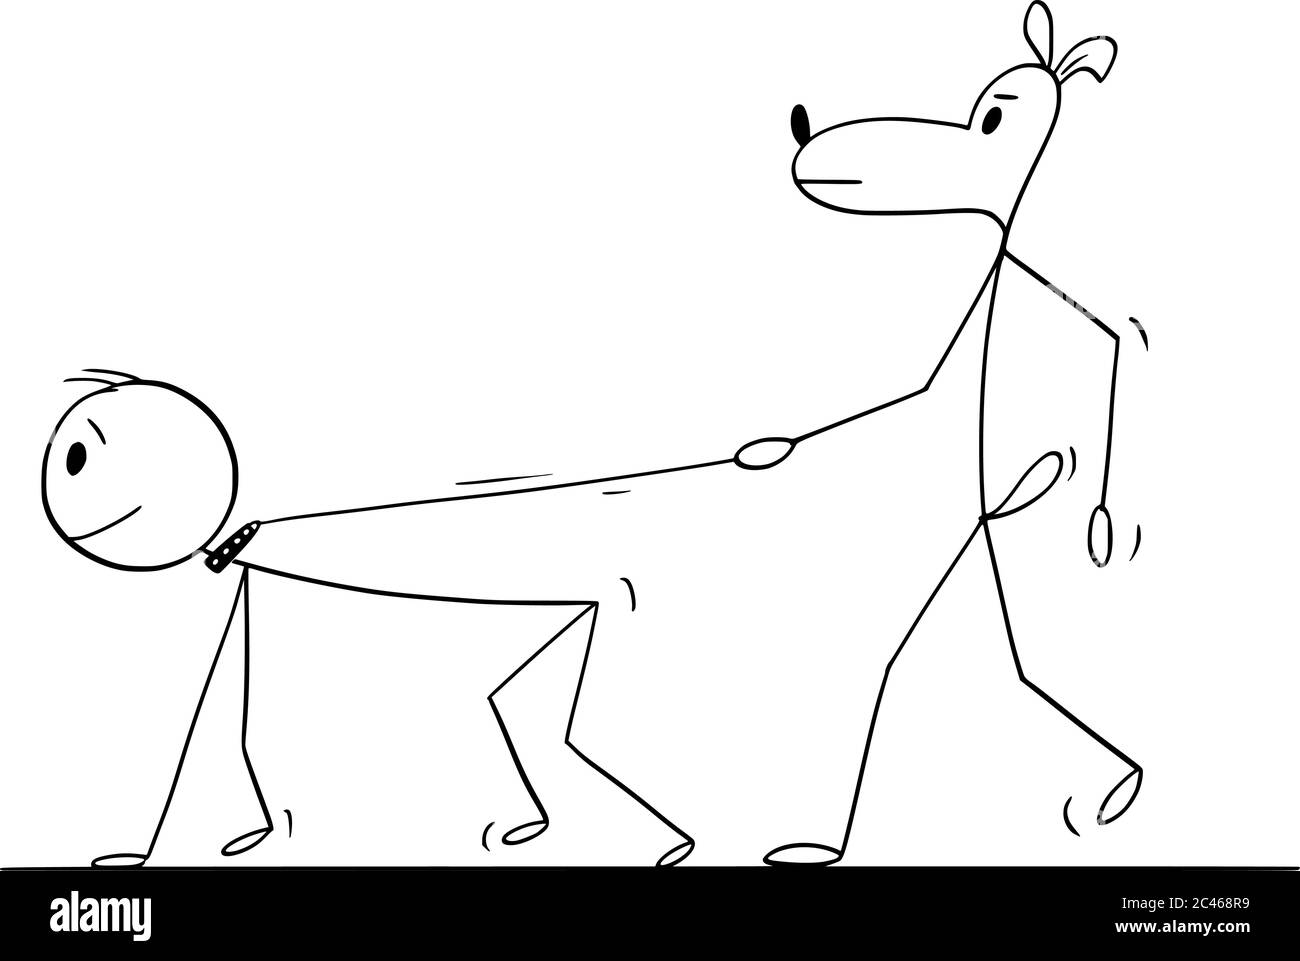 Disegno grafico vettoriale del cartoon illustrazione concettuale del cane che cammina o che tiene l'uomo o l'uomo sul guinzaglio o sul piombo. Illustrazione Vettoriale